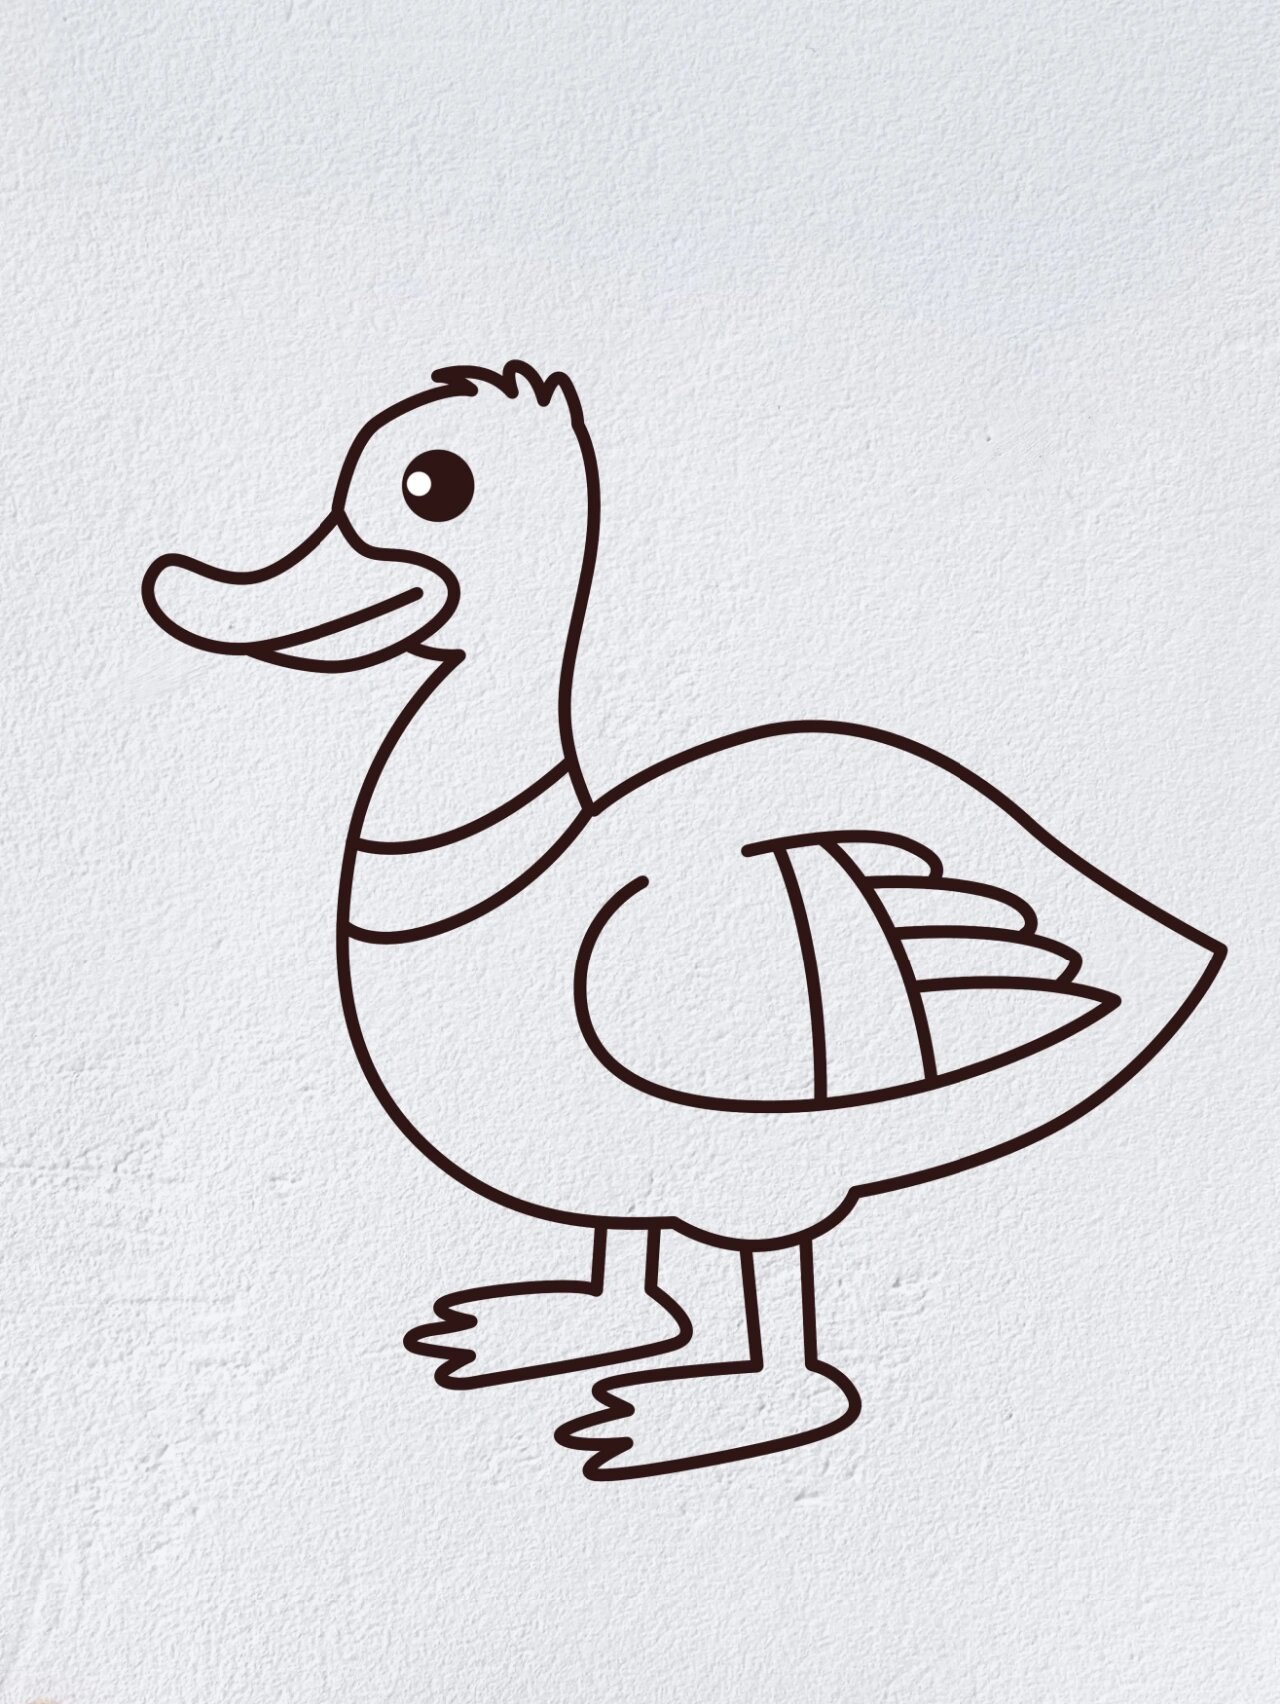 小鸭子的画法步骤图片